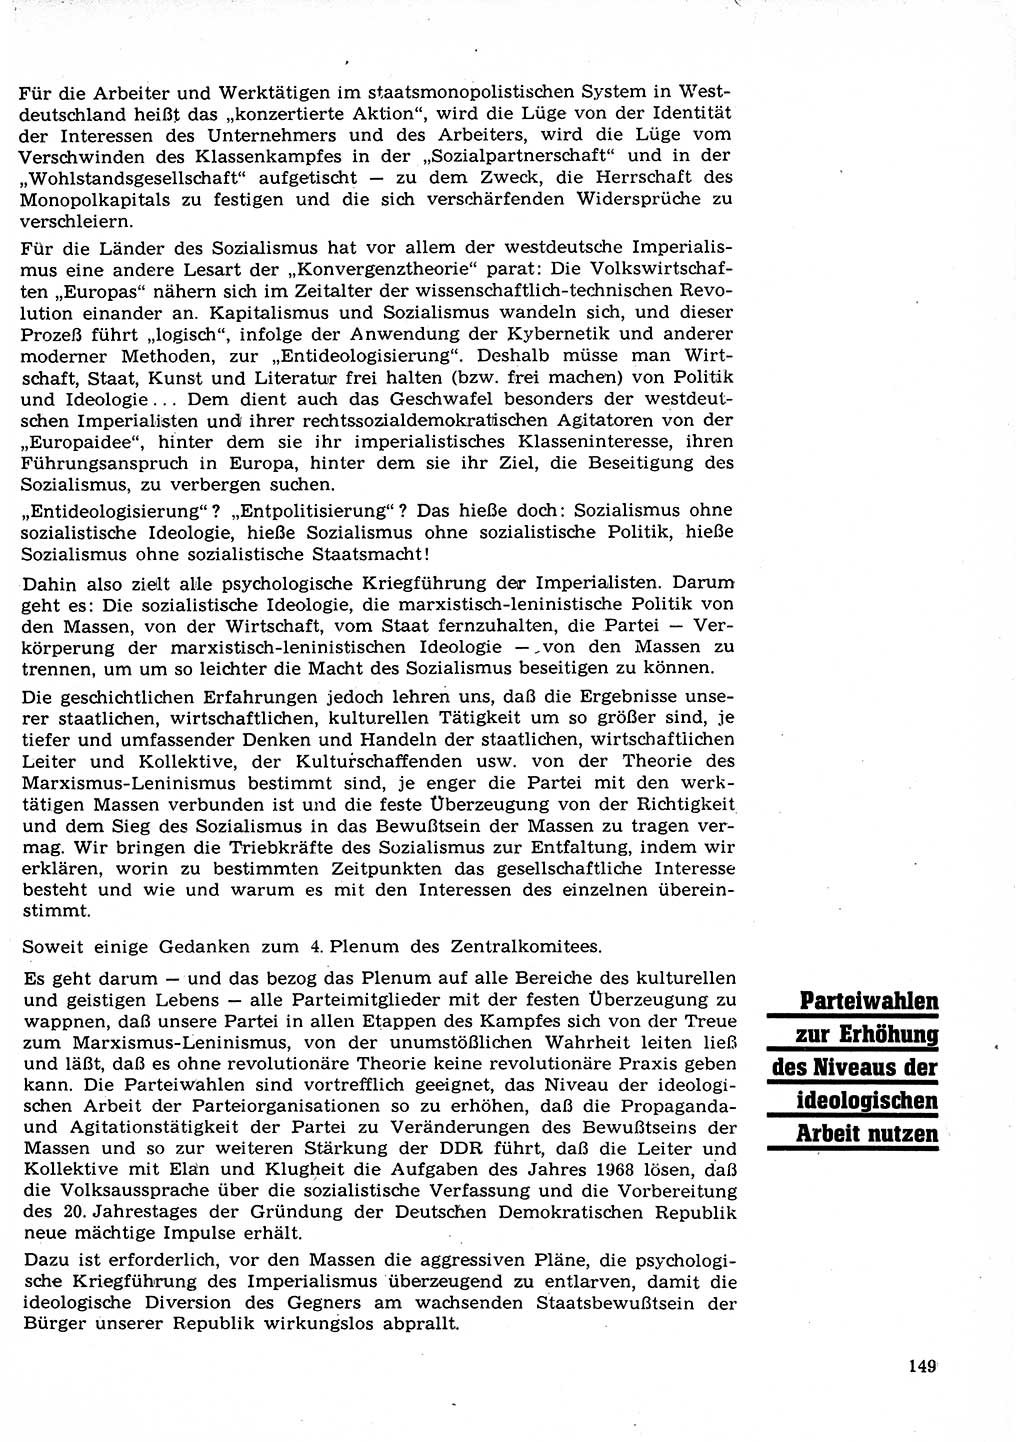 Neuer Weg (NW), Organ des Zentralkomitees (ZK) der SED (Sozialistische Einheitspartei Deutschlands) für Fragen des Parteilebens, 23. Jahrgang [Deutsche Demokratische Republik (DDR)] 1968, Seite 149 (NW ZK SED DDR 1968, S. 149)